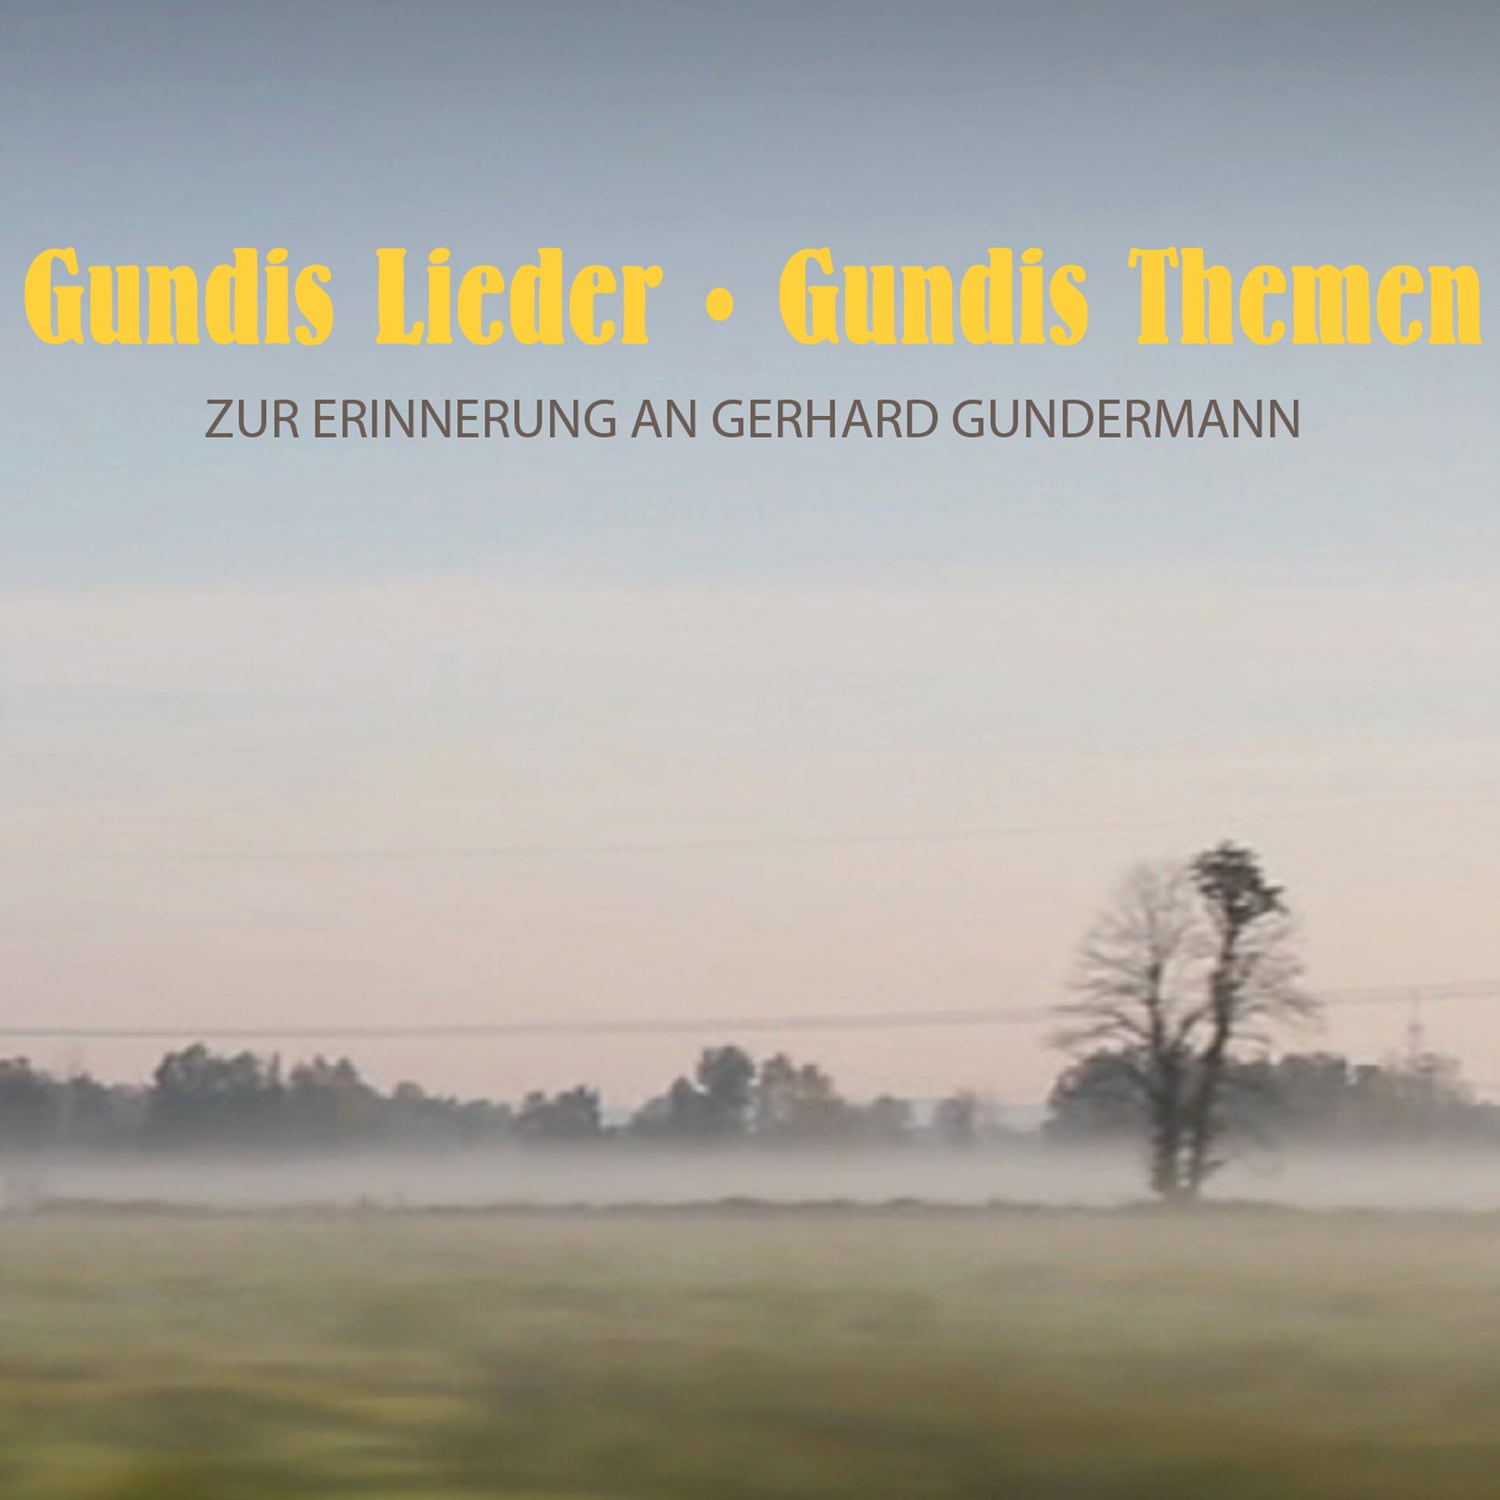 Gundis Lieder – Gundis Themen